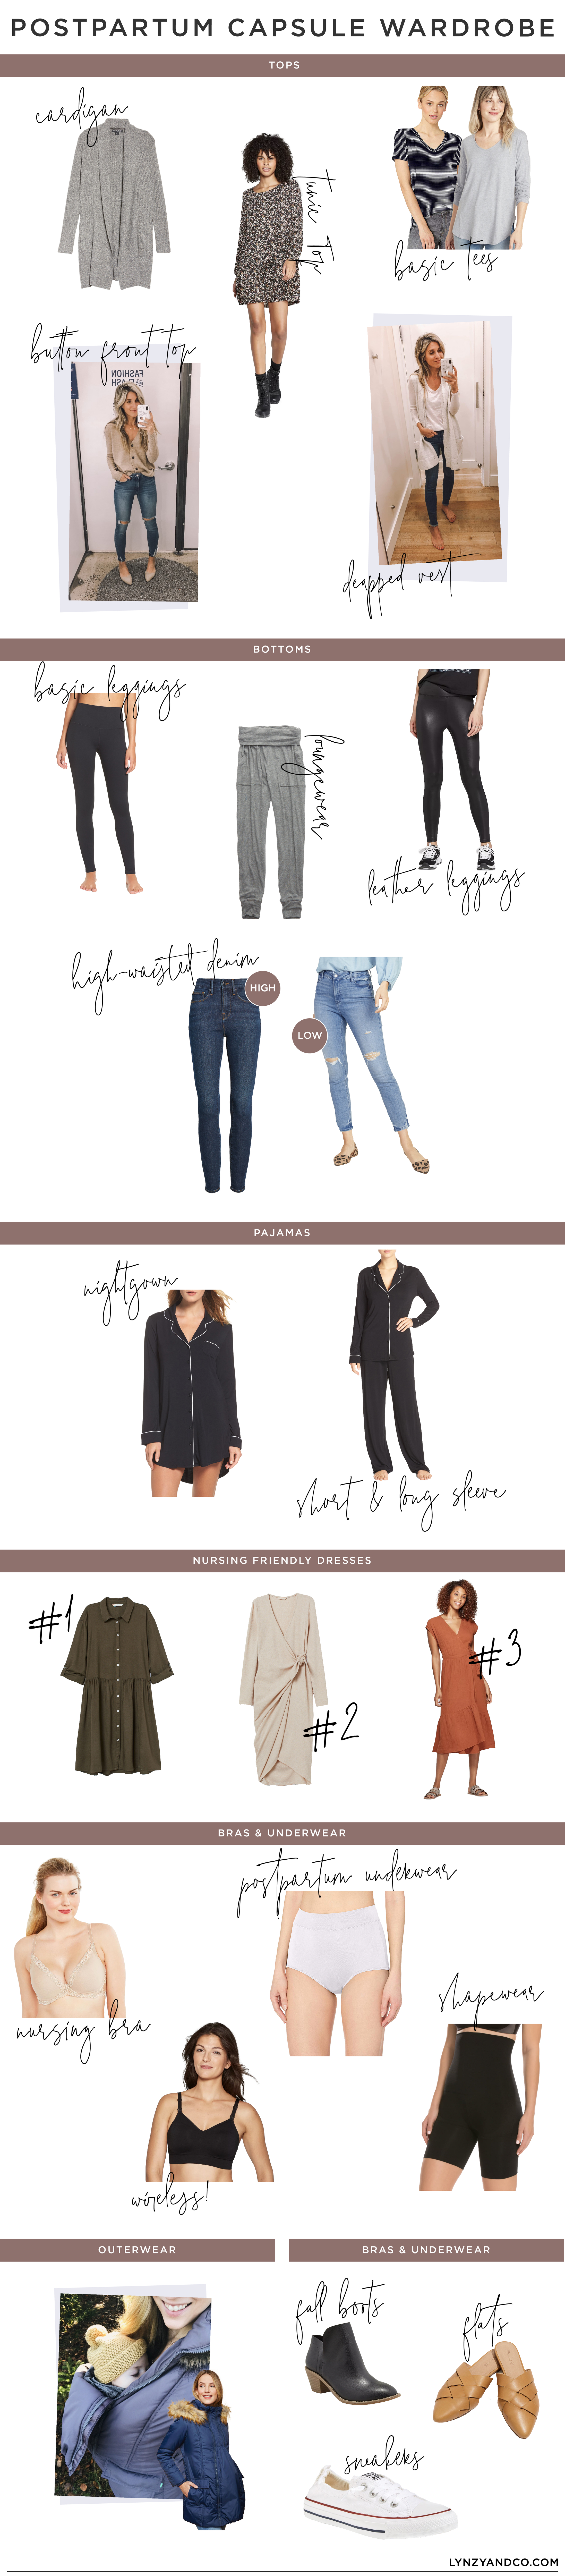 Fall & Winter Postpartum Capsule Wardrobe 2019 - Lynzy & Co.